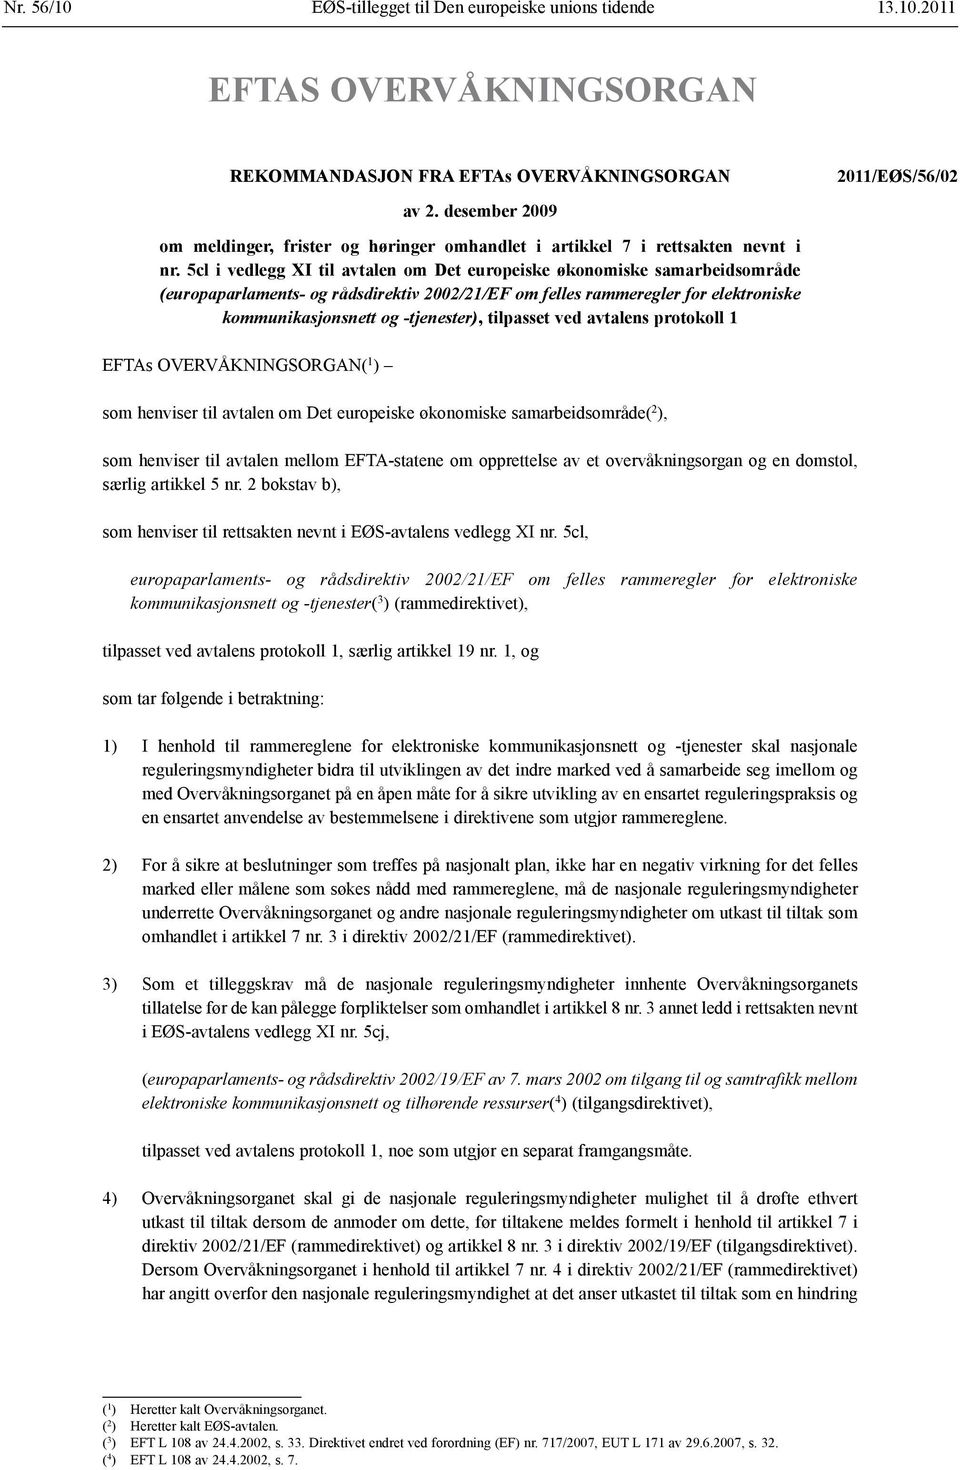 5cl i vedlegg XI til avtalen om Det e økonomiske samarbeidsområde (europaparlaments- og rådsdirektiv 2002/21/EF om felles rammeregler for elektroniske kommunikasjonsnett og tjenester), tilpasset ved